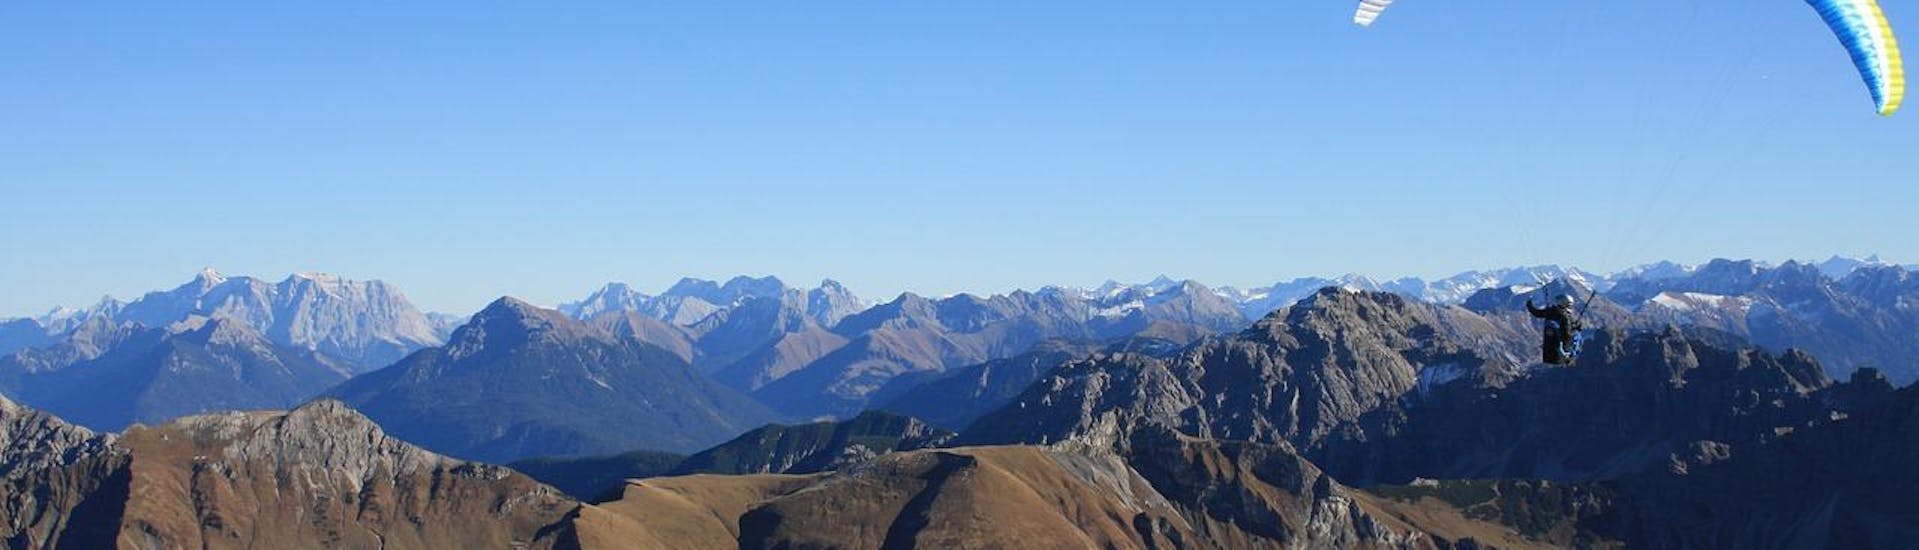 Volo panoramico in parapendio biposto a Bach - Tiroler Lech Nature Park.